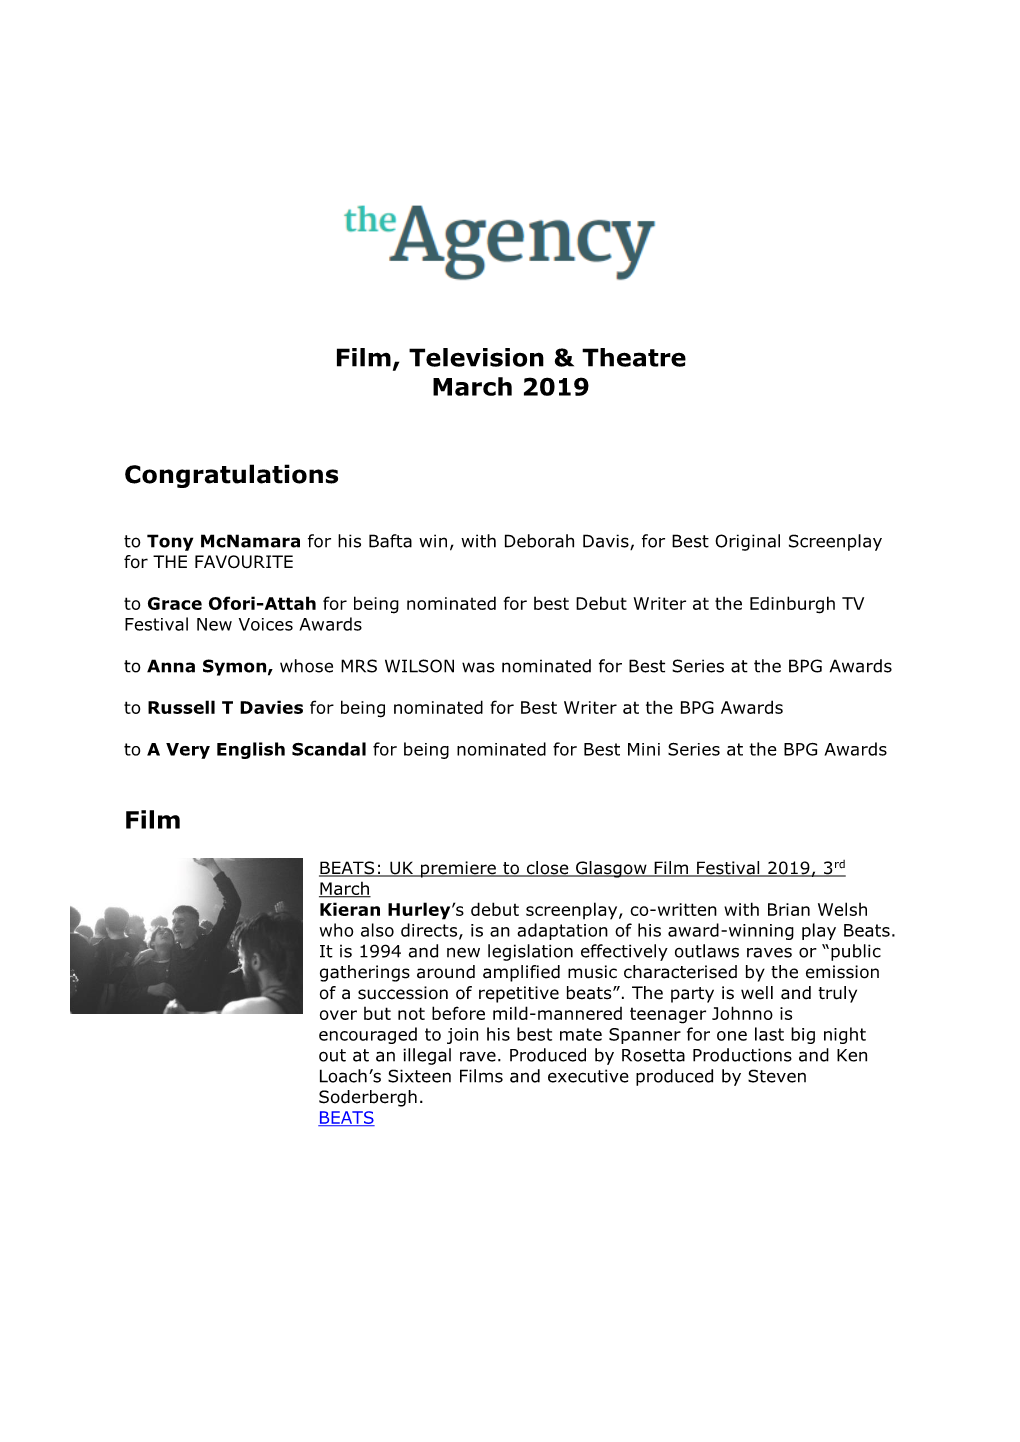 Film, Television & Theatre March 2019 Congratulations